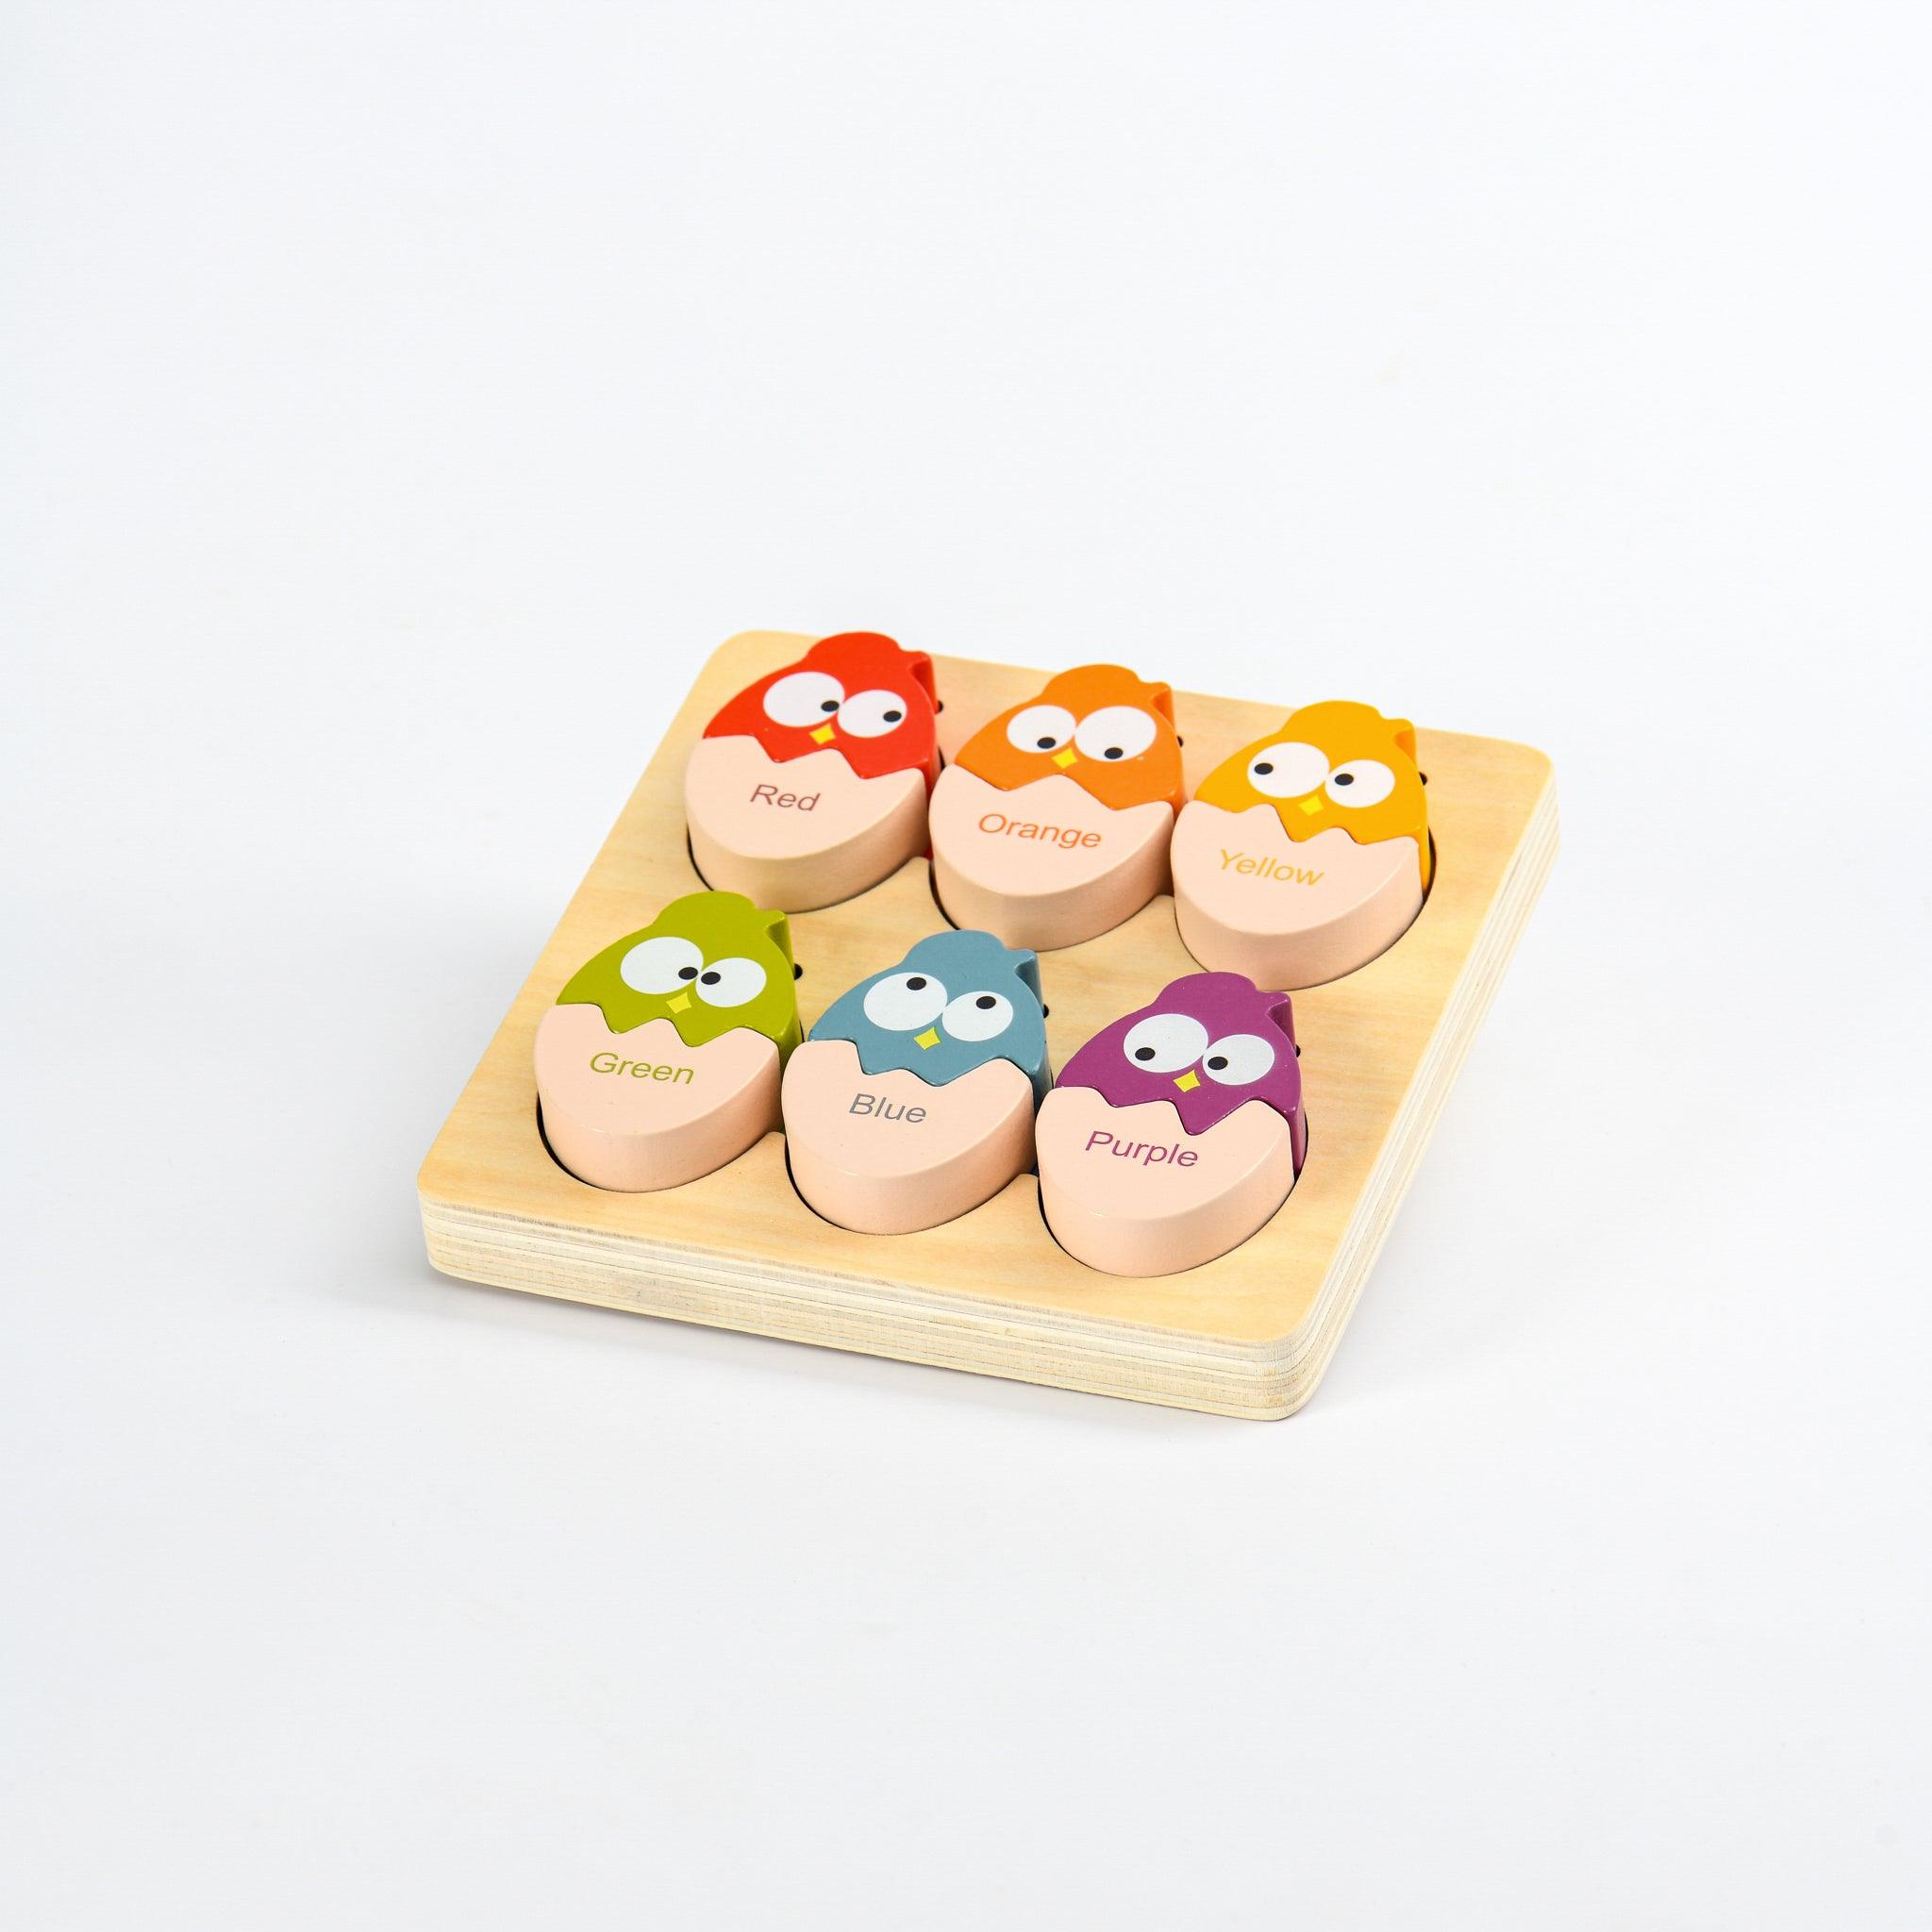 colour-matching-eggs-montessori-toys-wooden-toys